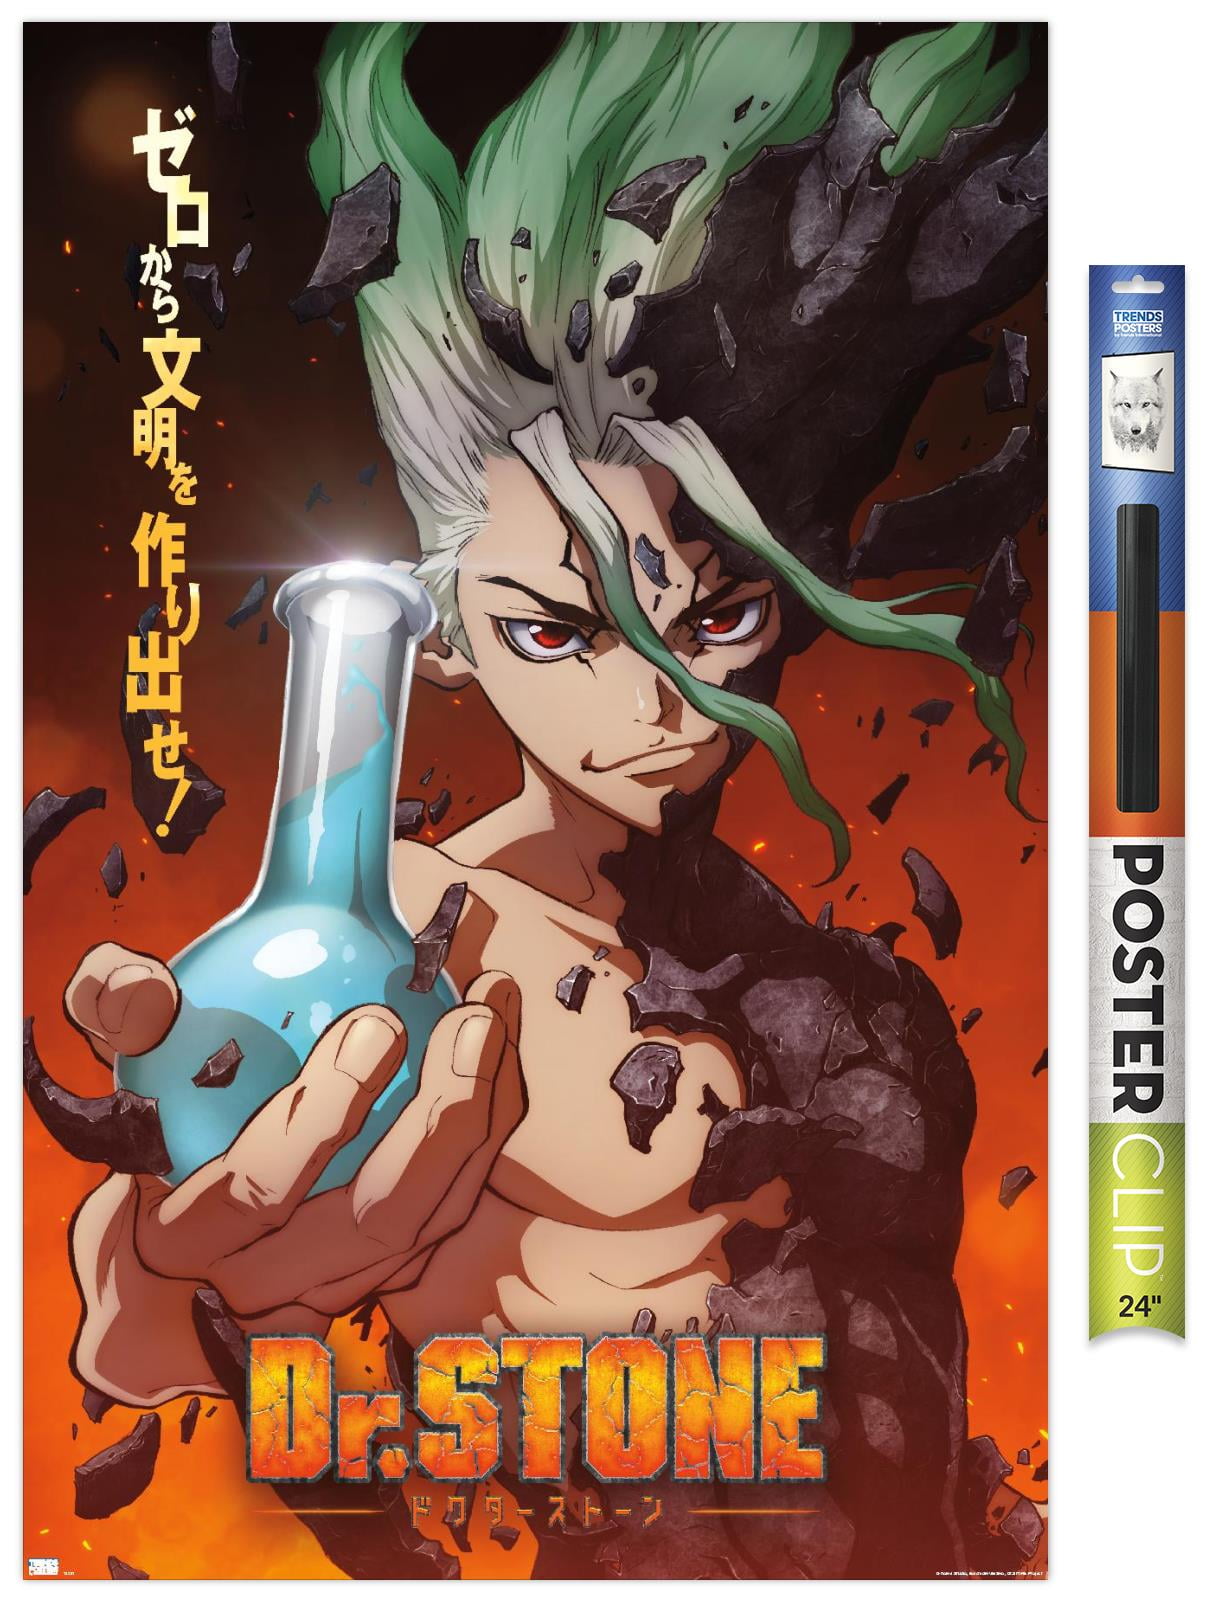 Dr Stone Manga Posters Online - Shop Unique Metal Prints, Pictures